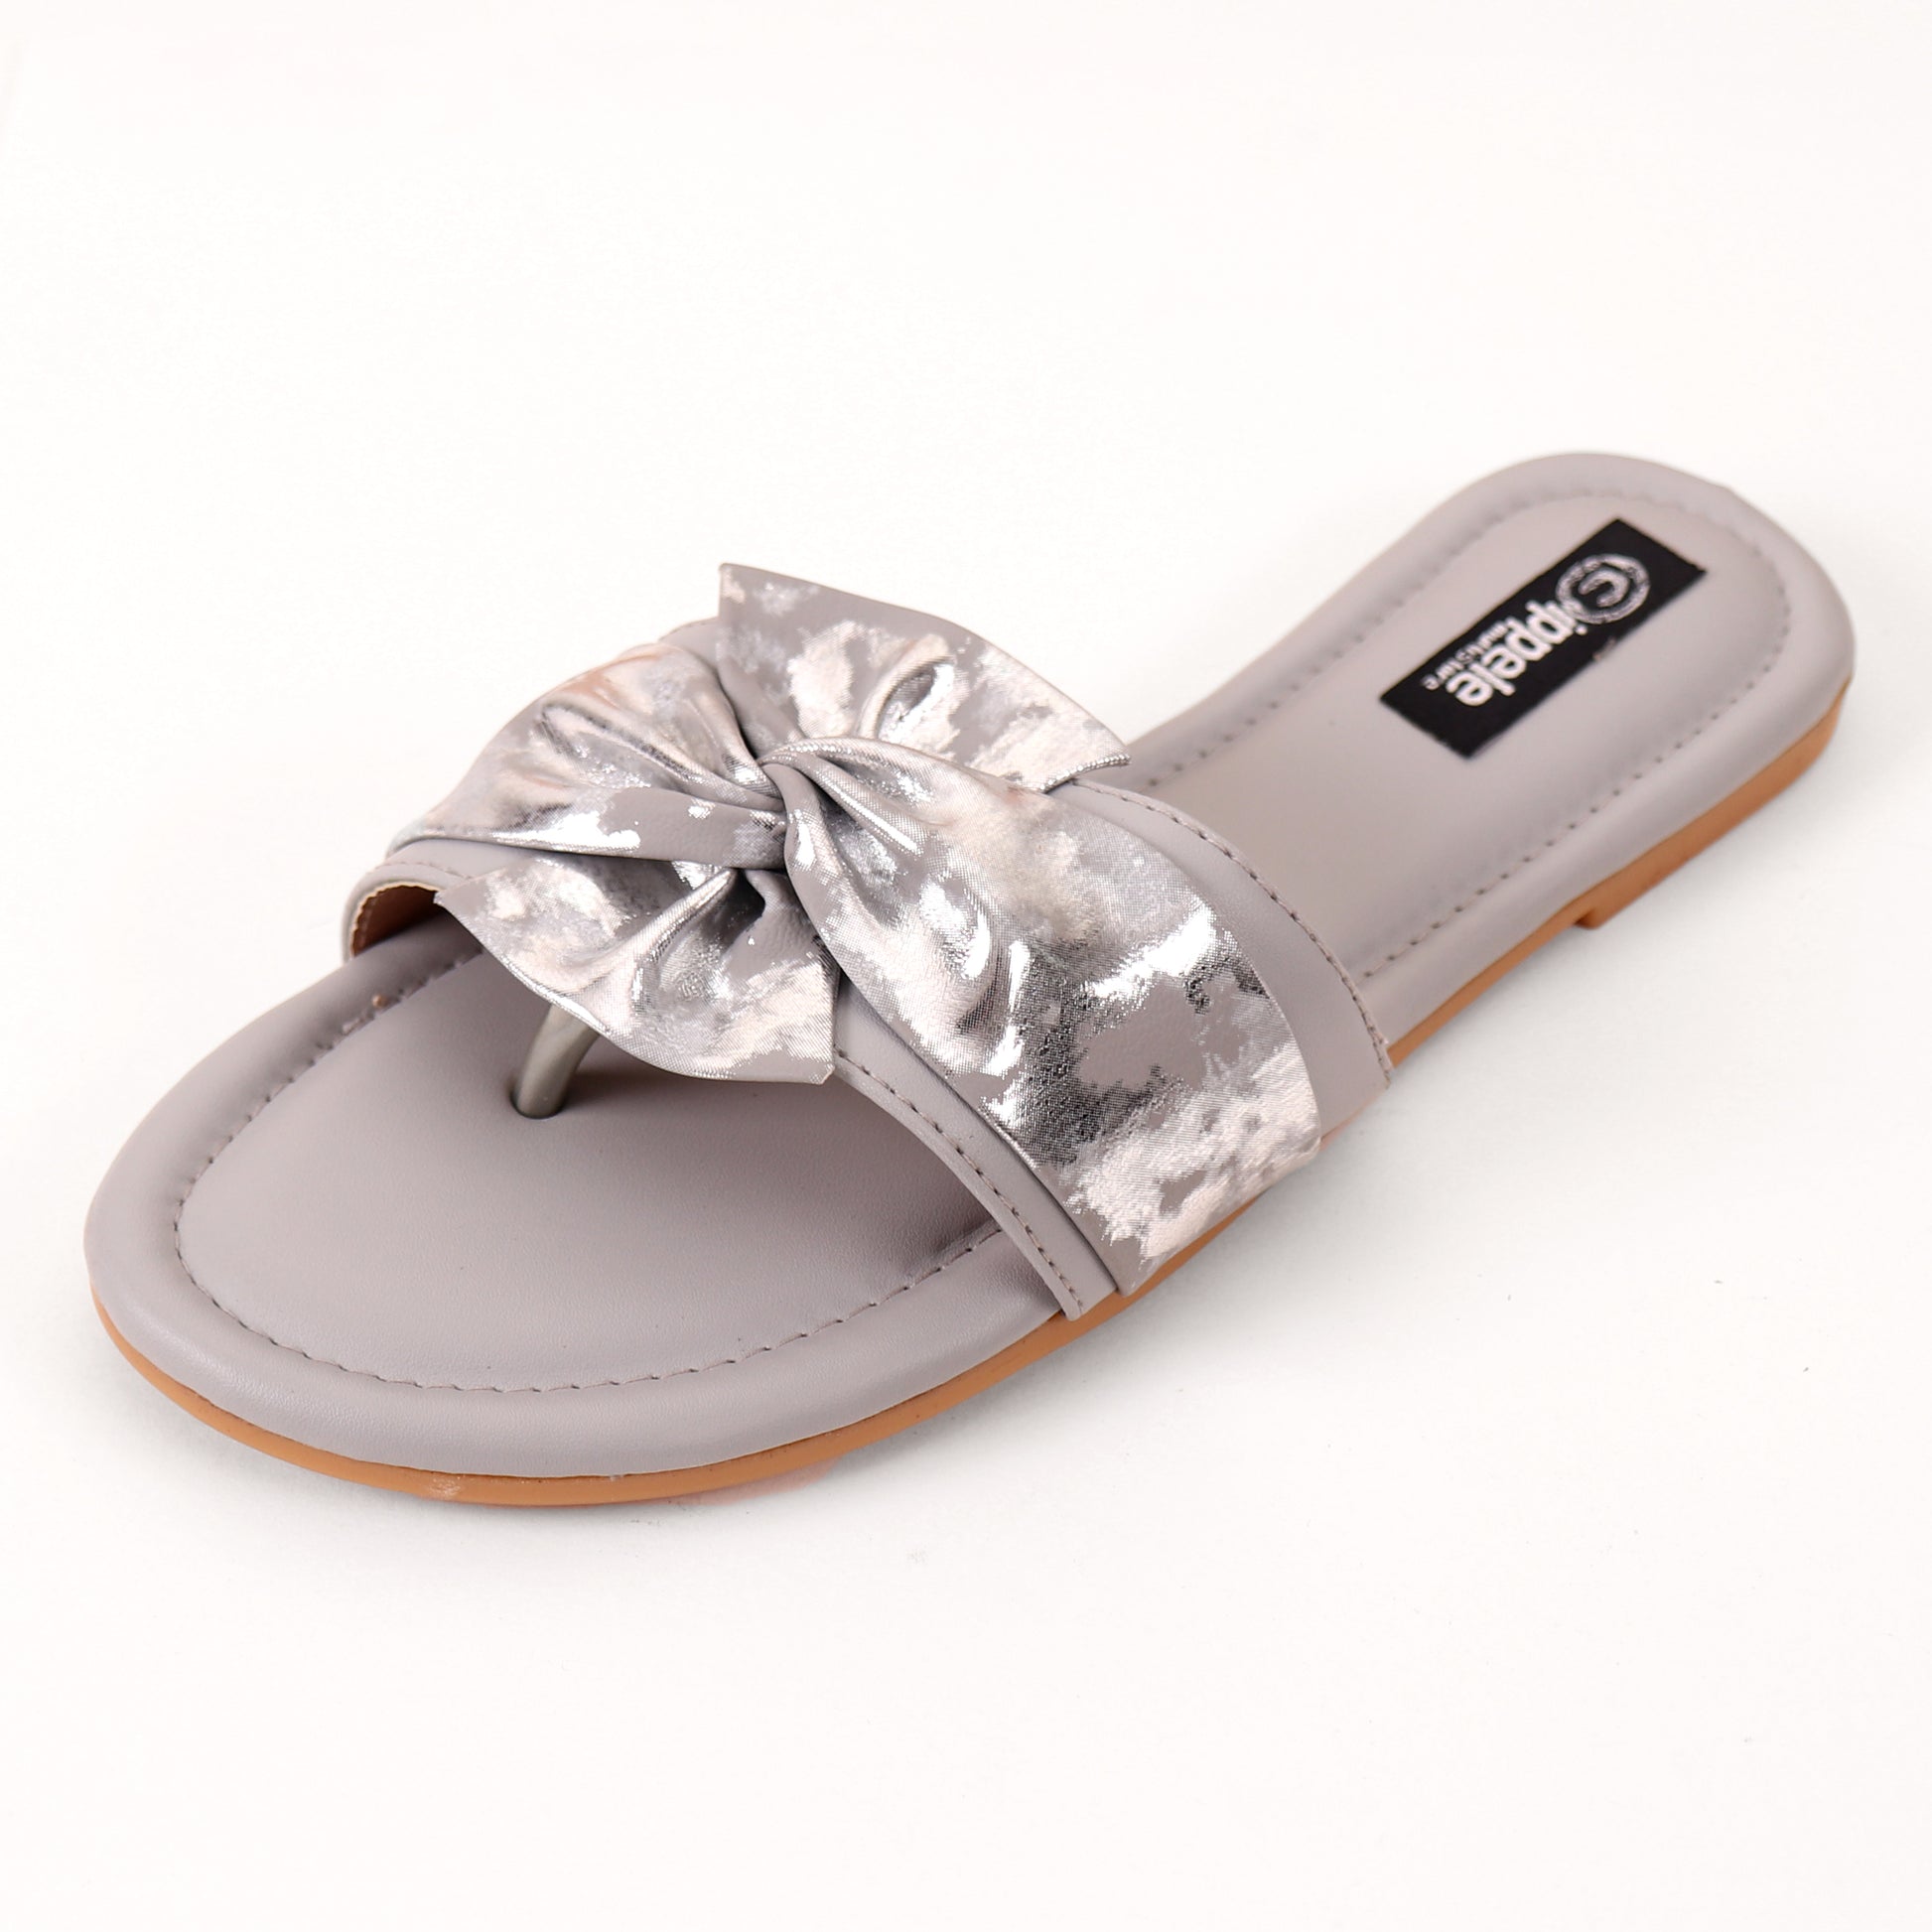 Foot Wear,Twist That Knot Flats in Grey - Cippele Multi Store